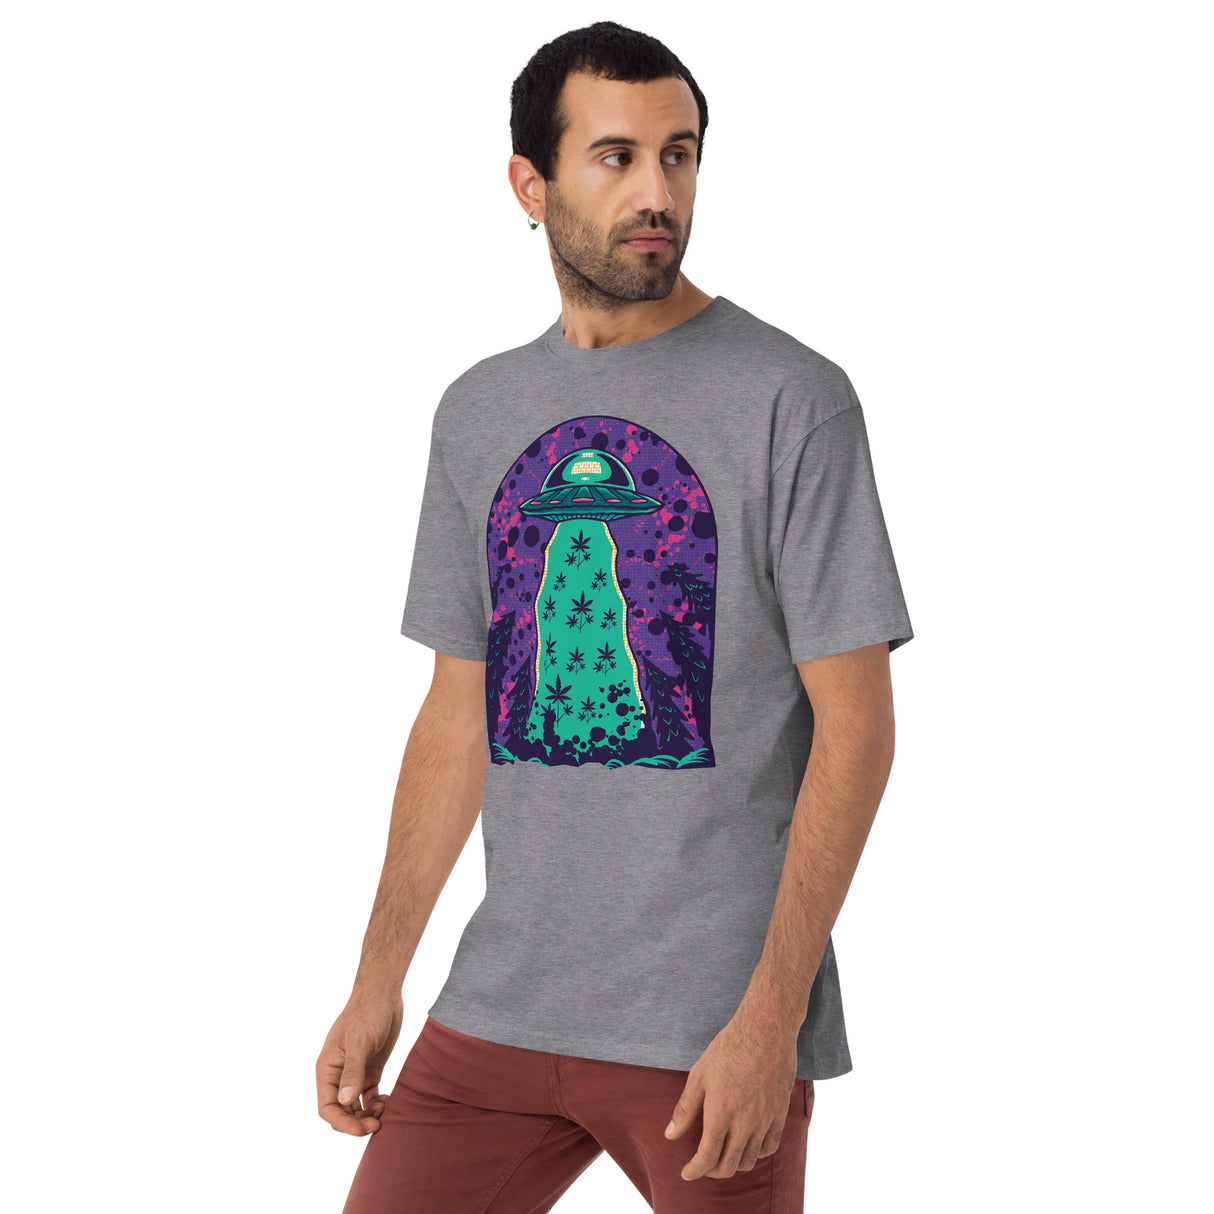 Alien Cropping T-Shirt